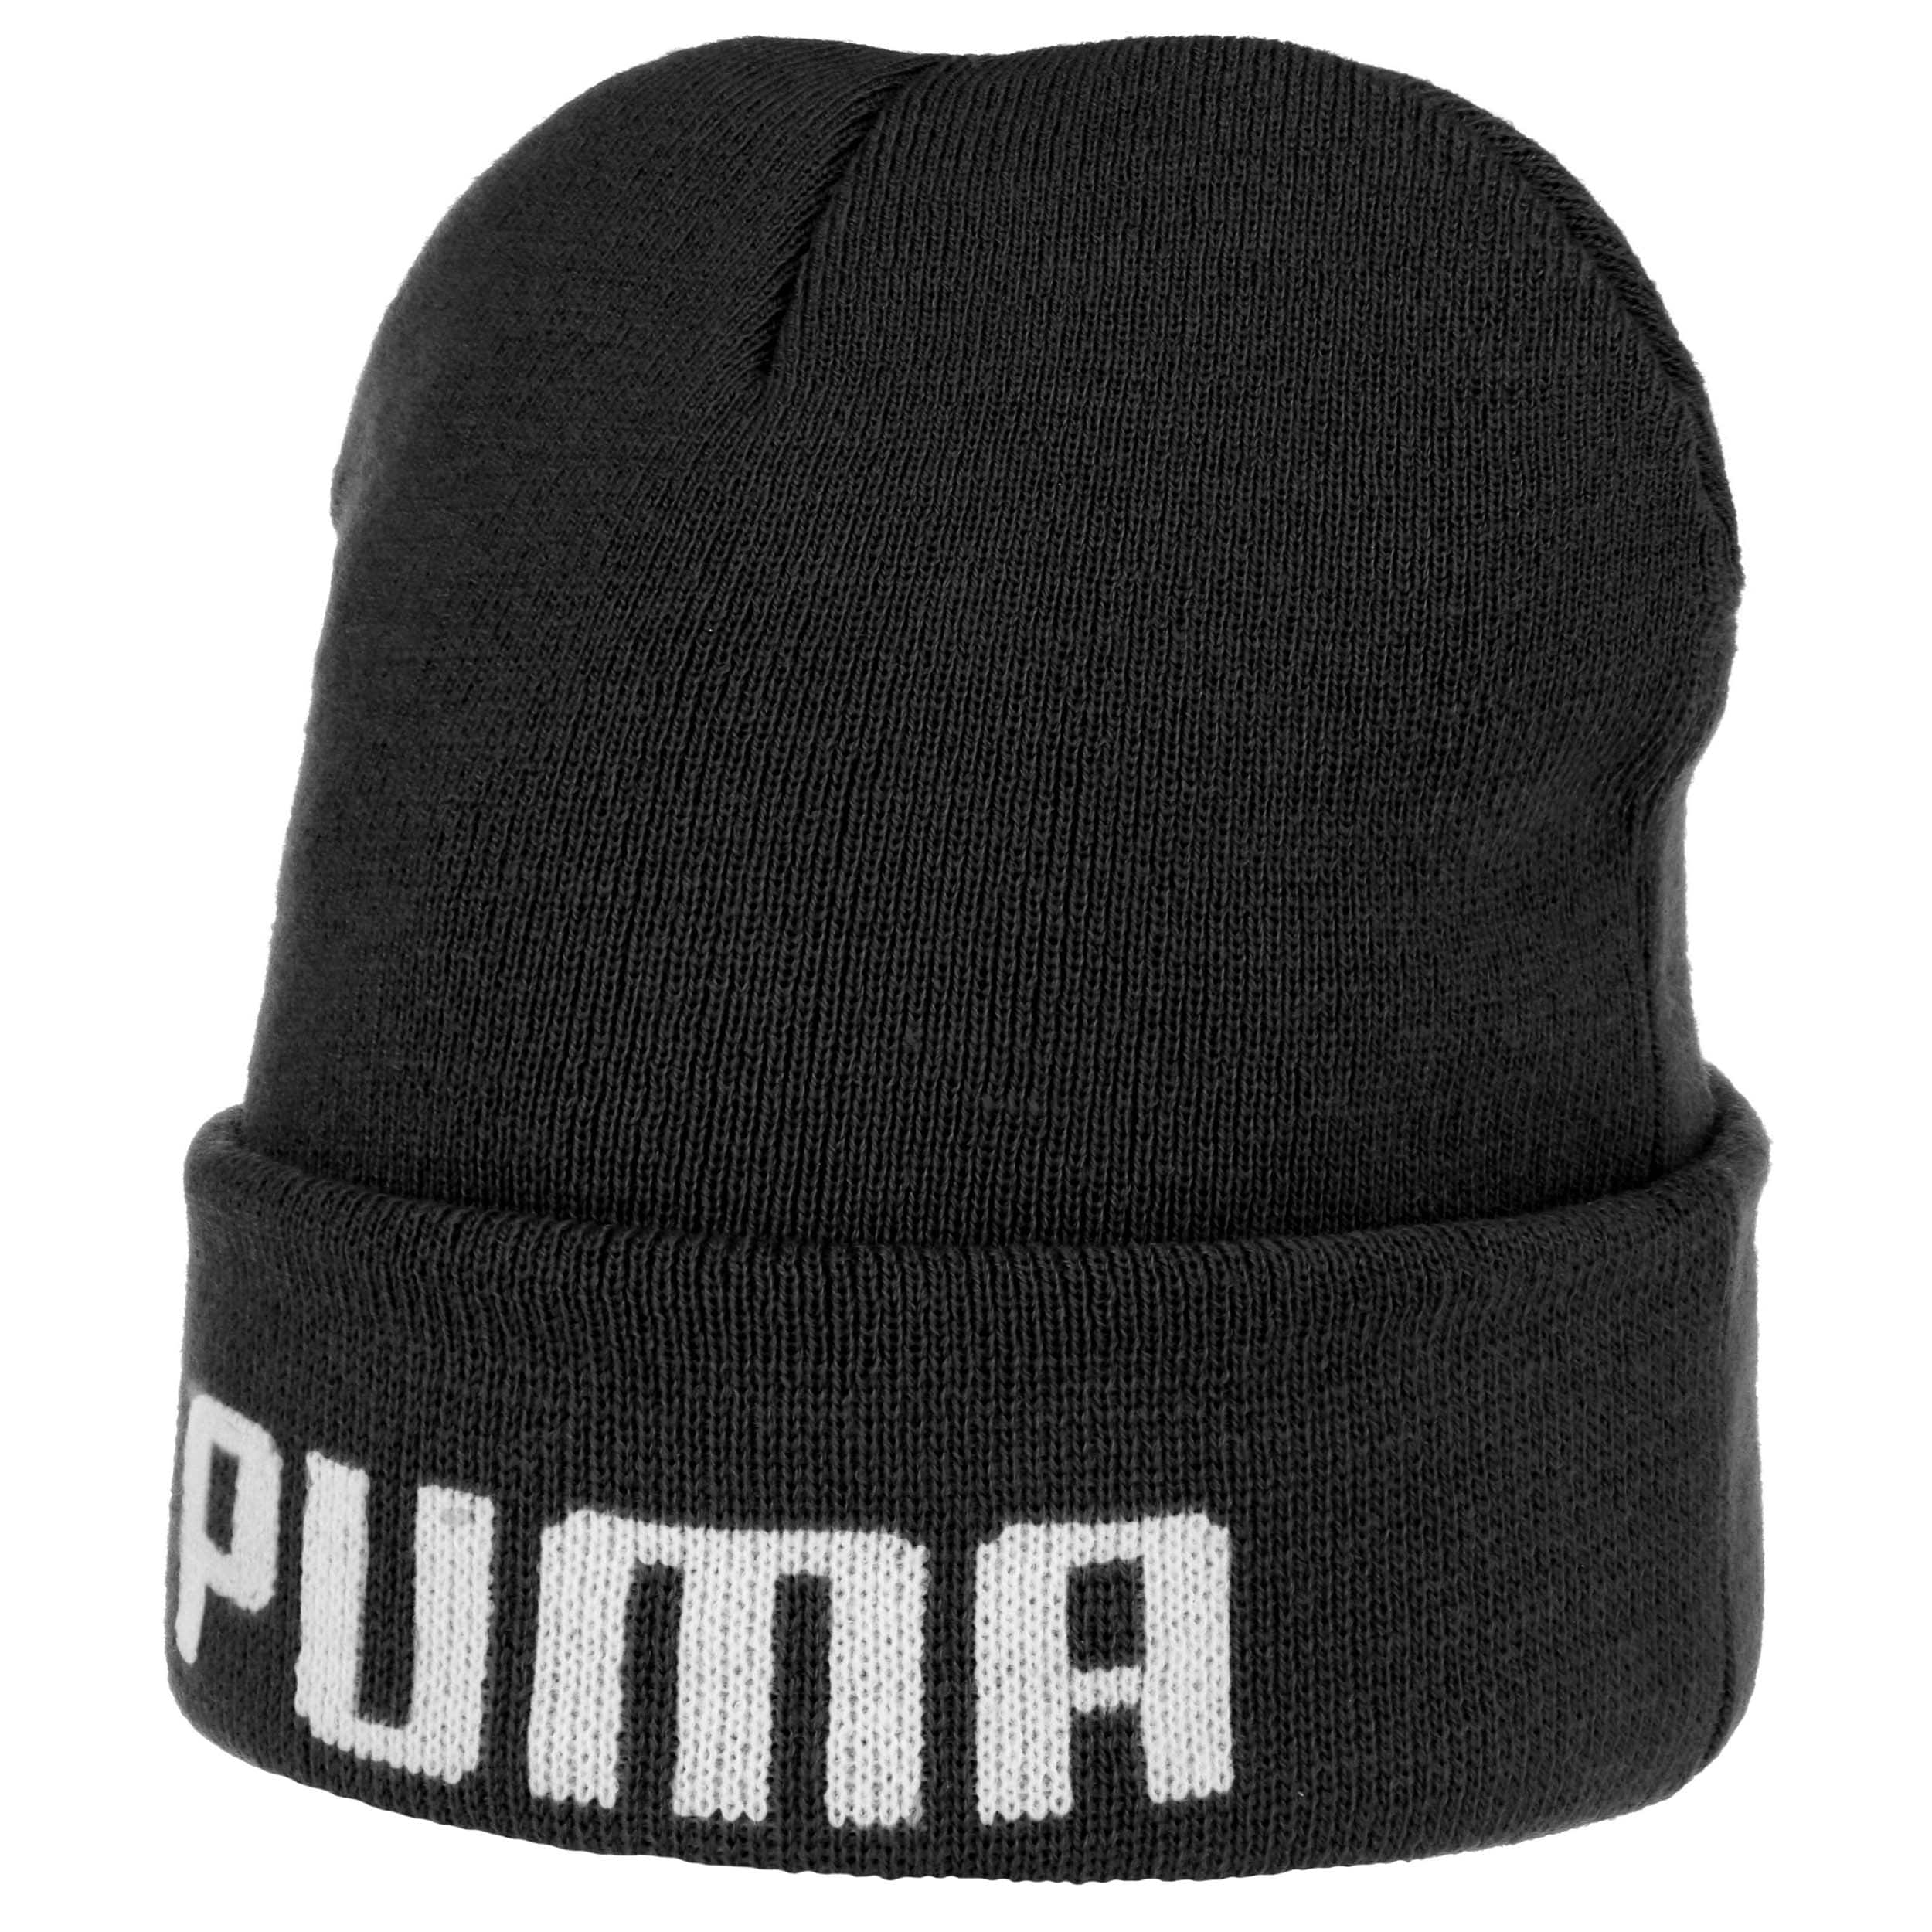 puma beanie hat